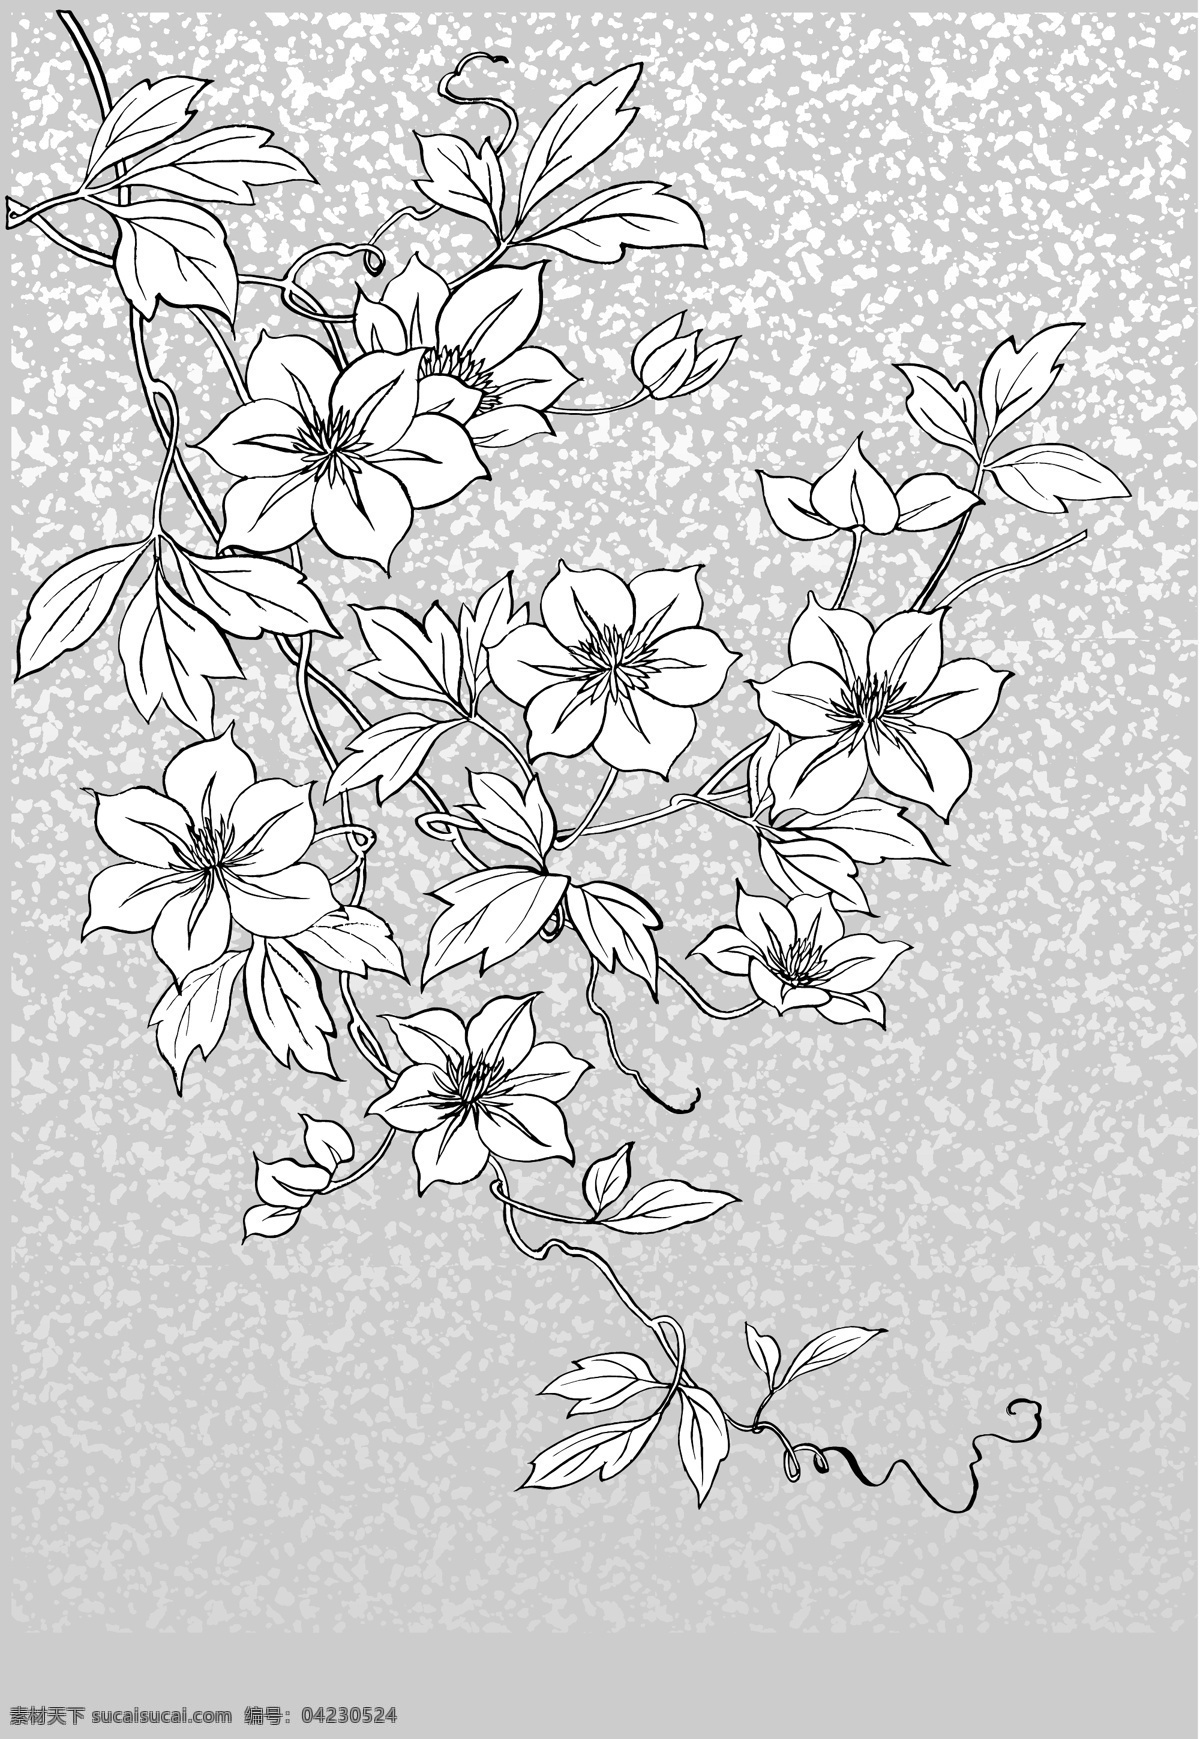 日本 线描 植物 花卉 矢量 系列 包括 菊花 雪 南天 红叶 流水 云朵 各种 背景 其他矢量 矢量素材 矢量图库